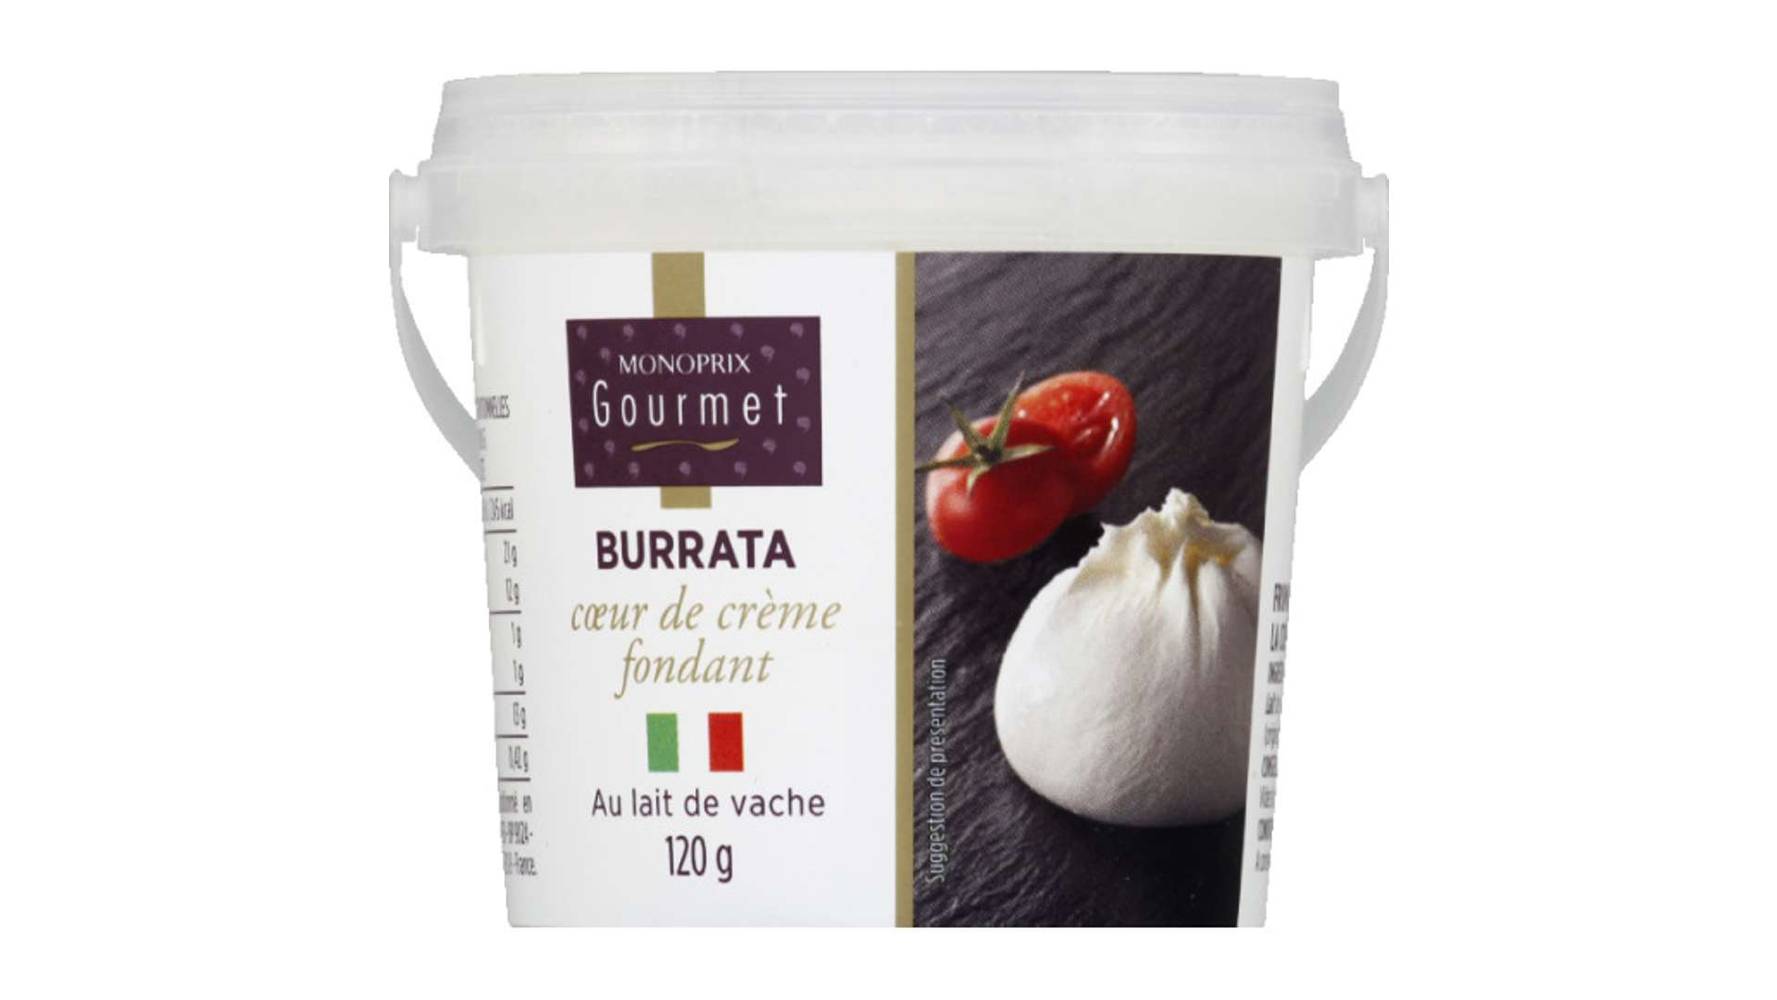 Monoprix Gourmet Burrata coeur de crème fondant, au lait de vache Le pot de 120g